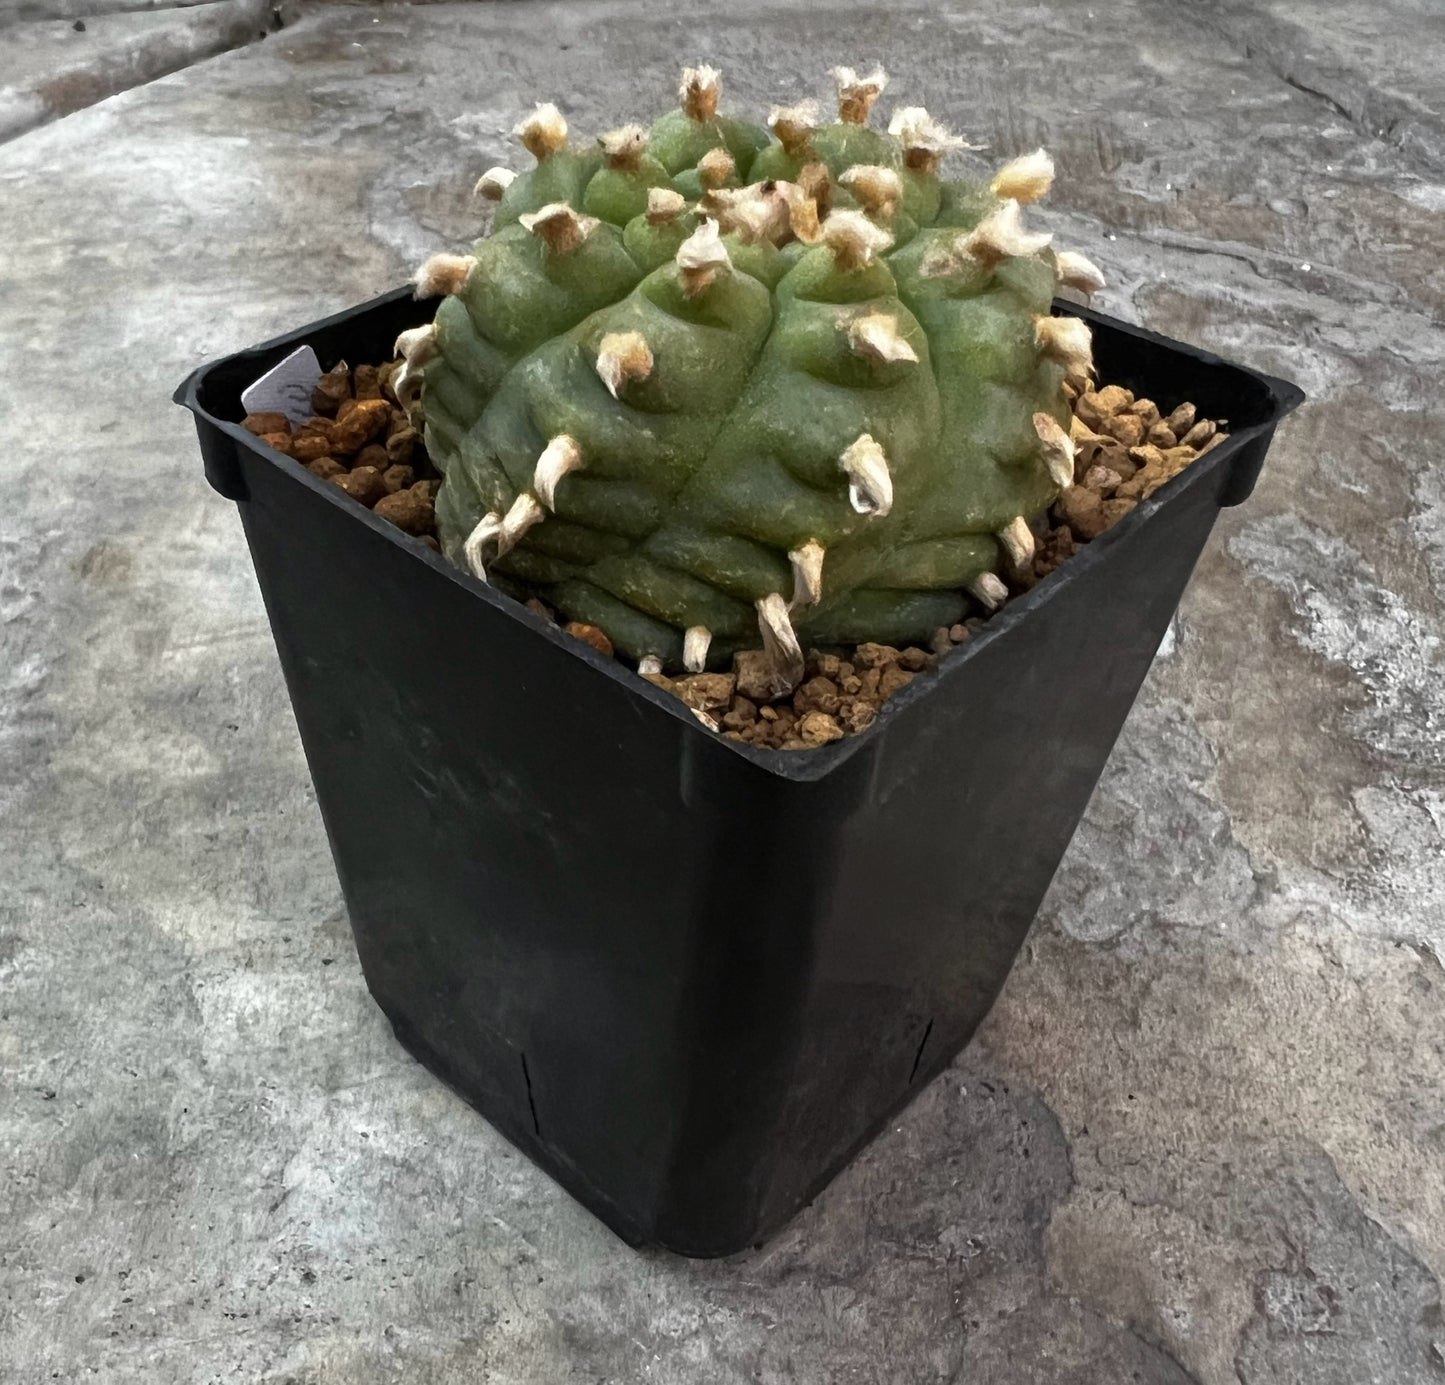 Raro cactus en espiral desinjertado, 7,7 cm de ancho